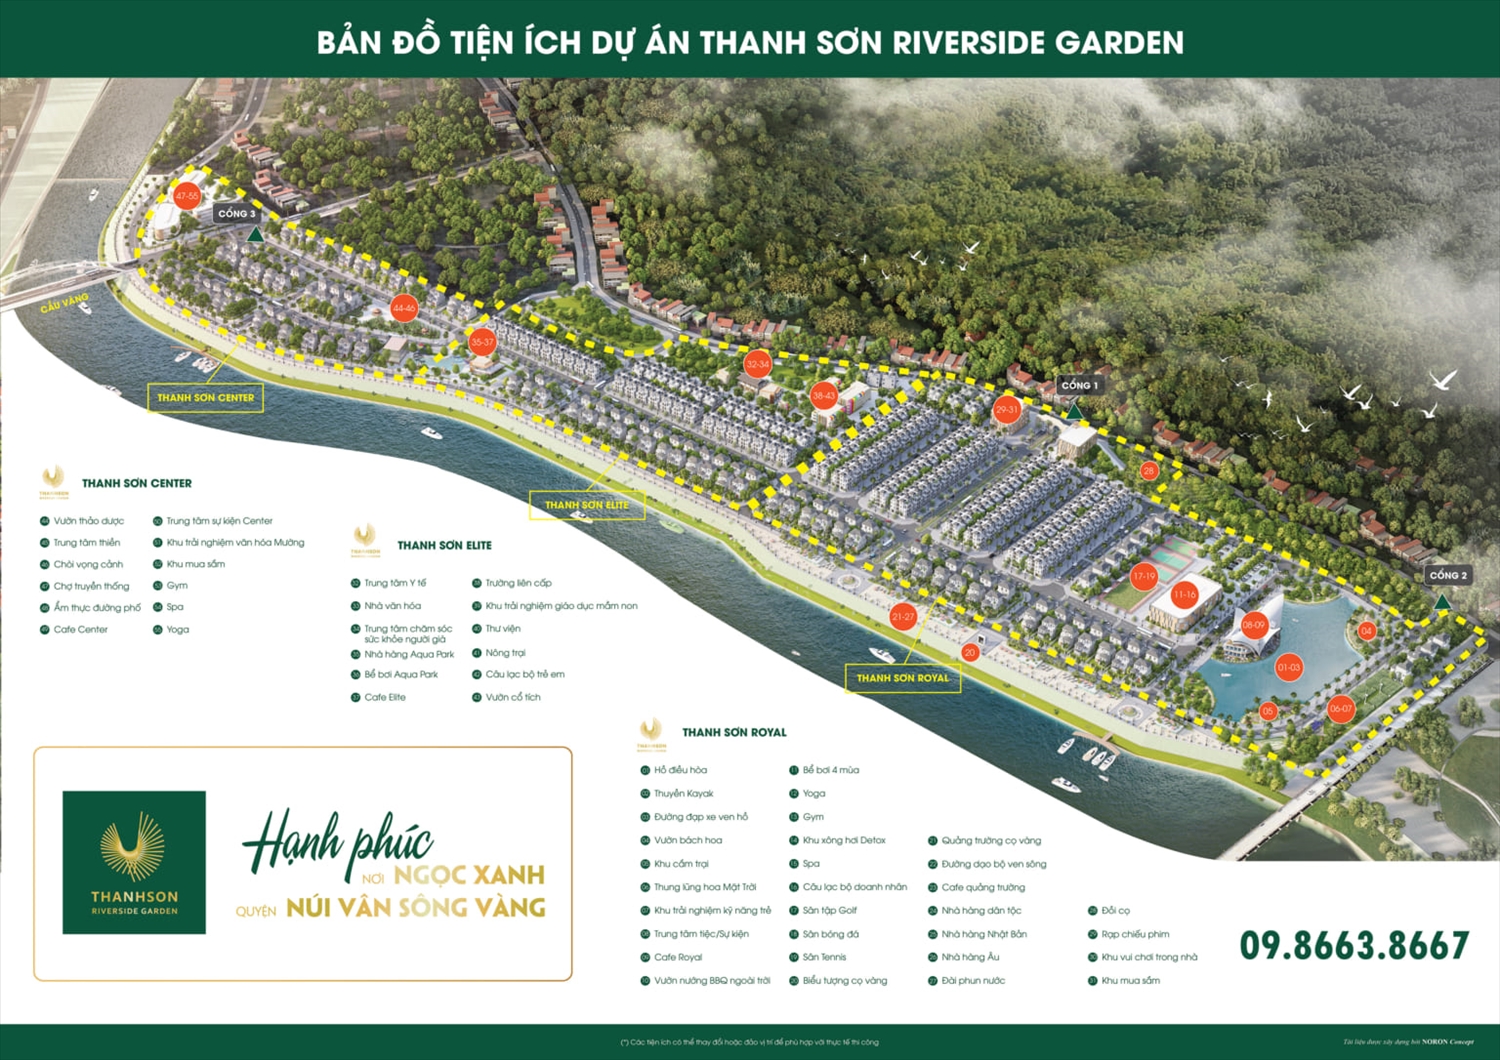 Dự án Khu dân cư mới Soi Cả được chủ đầu tư quảng cáo là Khu đô thị hiện đại "Thanh Sơn Riverside Garden"